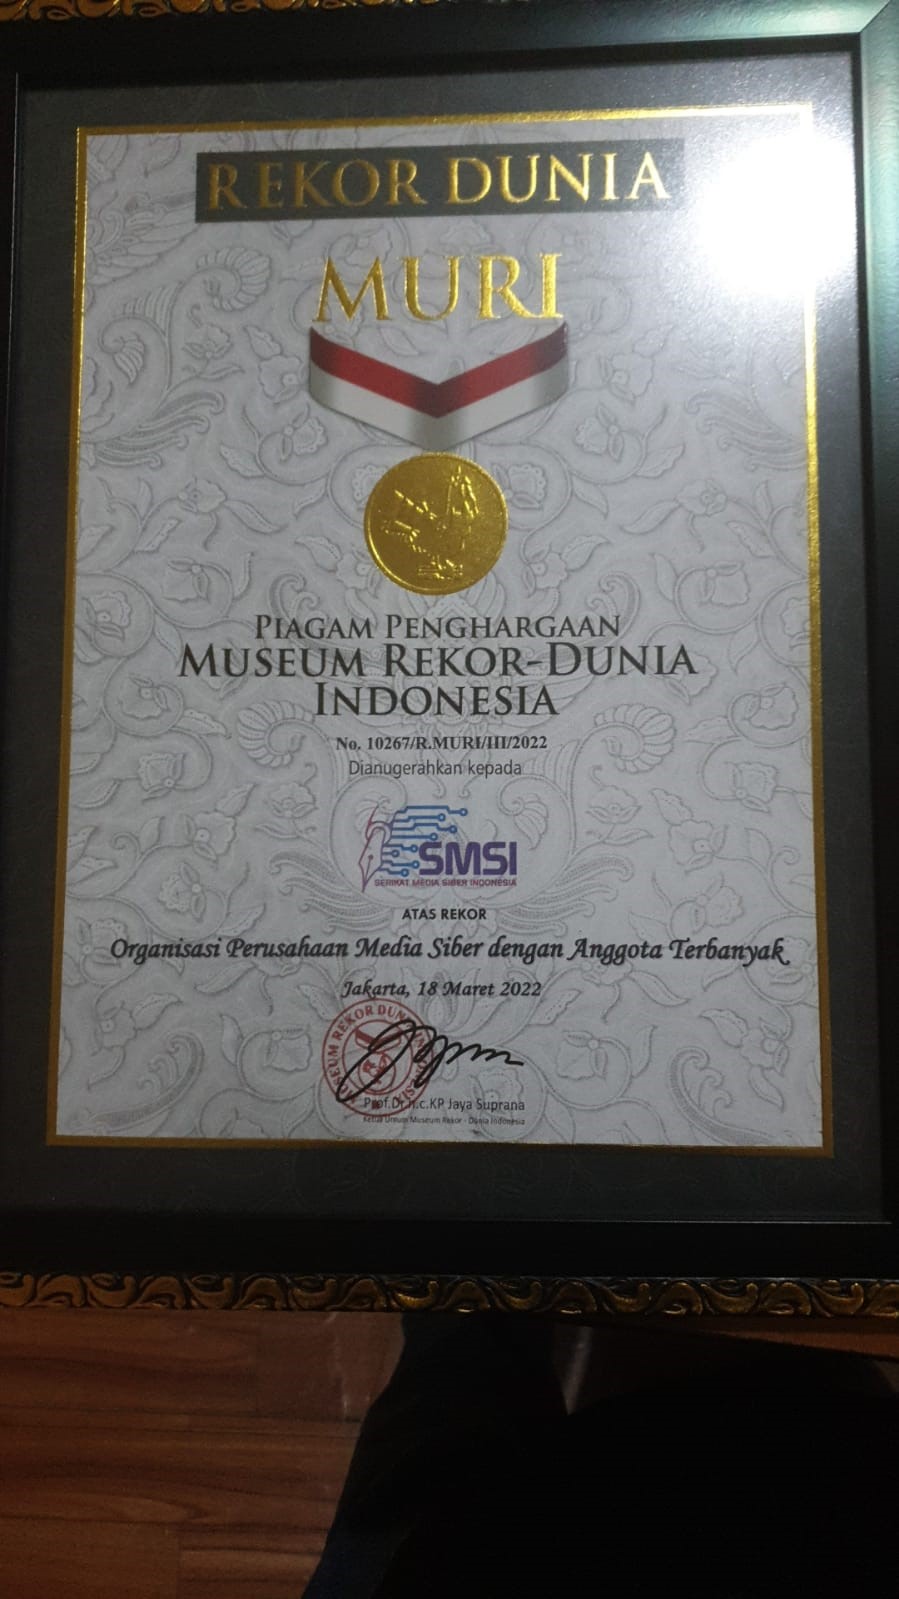 foto: Piagam Penghargaan MURI yang diperoleh SMSI sebagai Organisasi Perusahaan Media Siber dengan Anggota Terbanyak